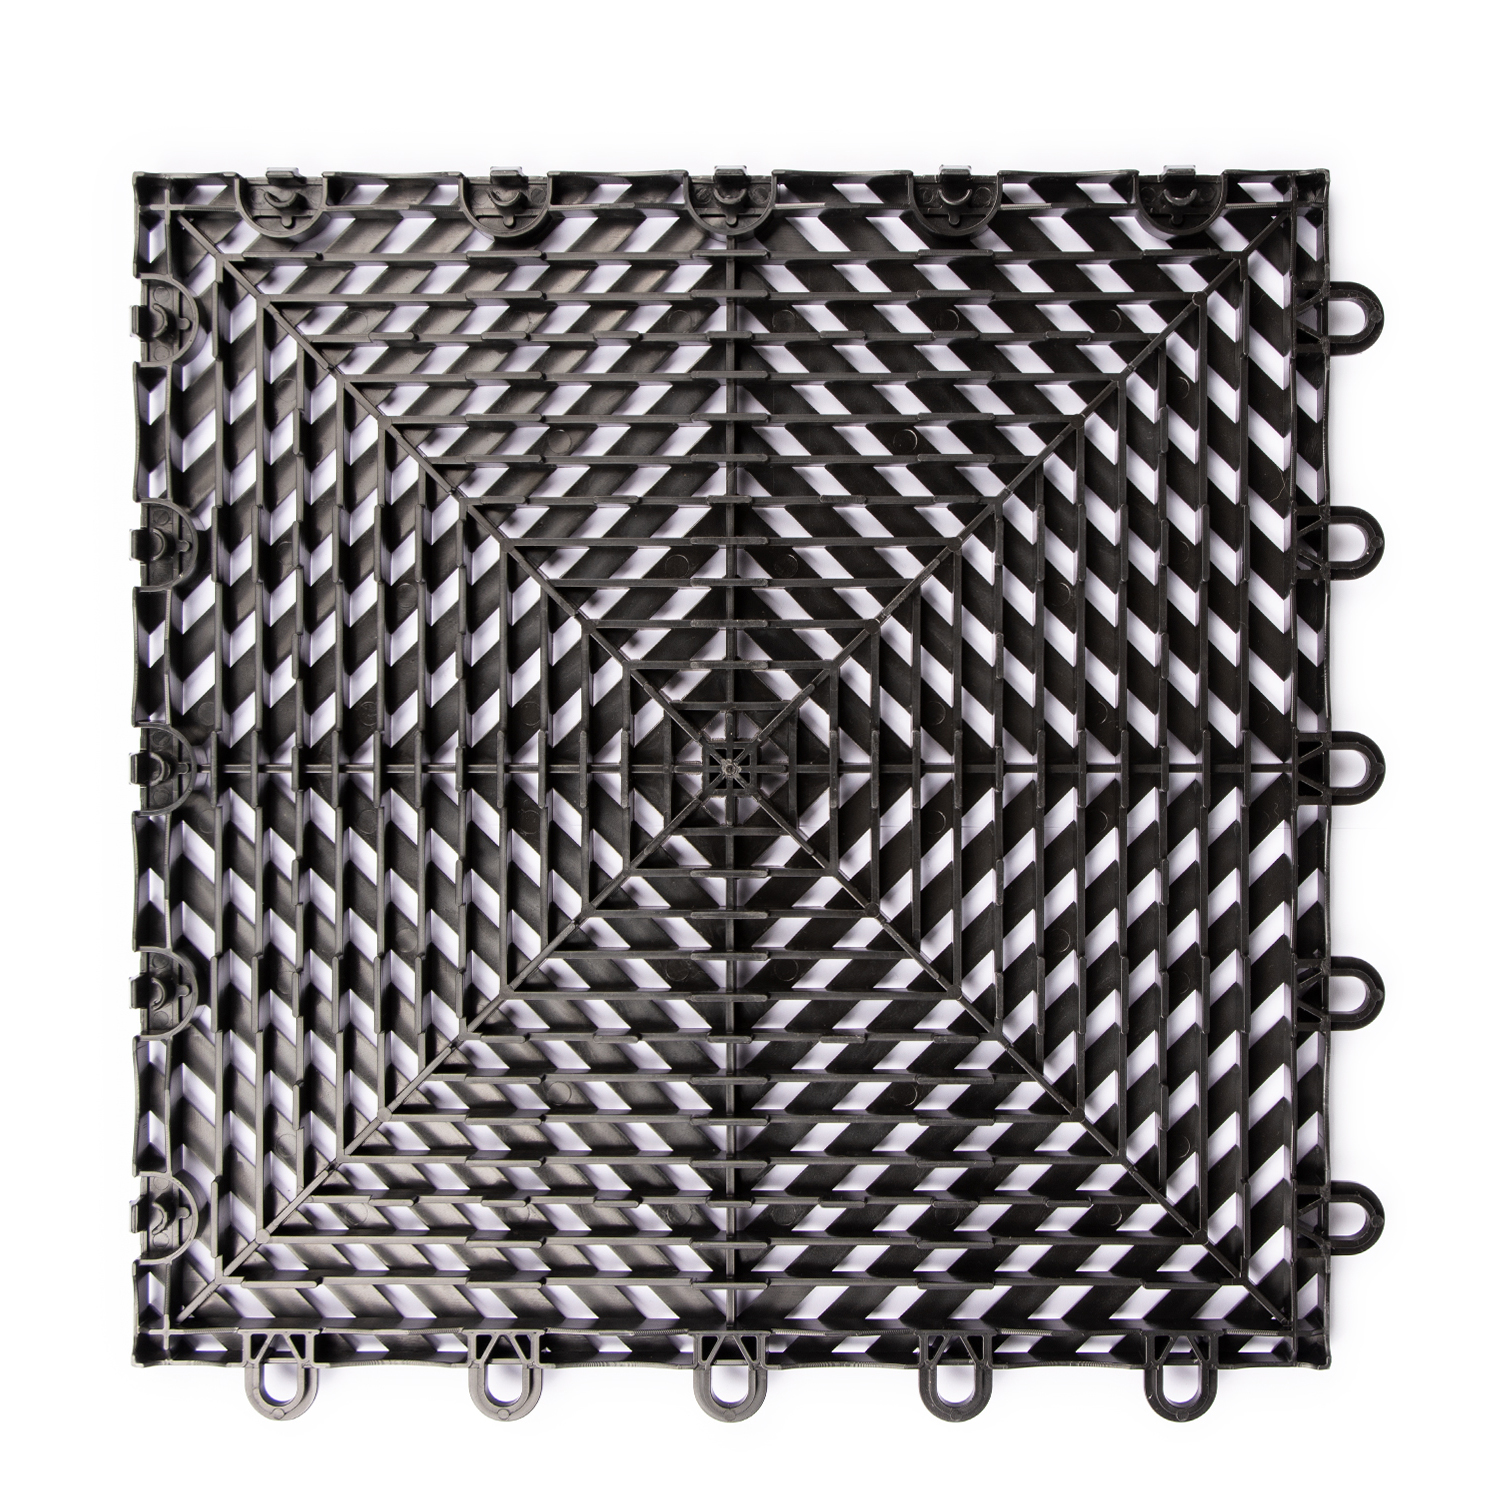 Gitterfliese hart schwarz 300x300x15mm (Set 25 Stück) - Technikplaza